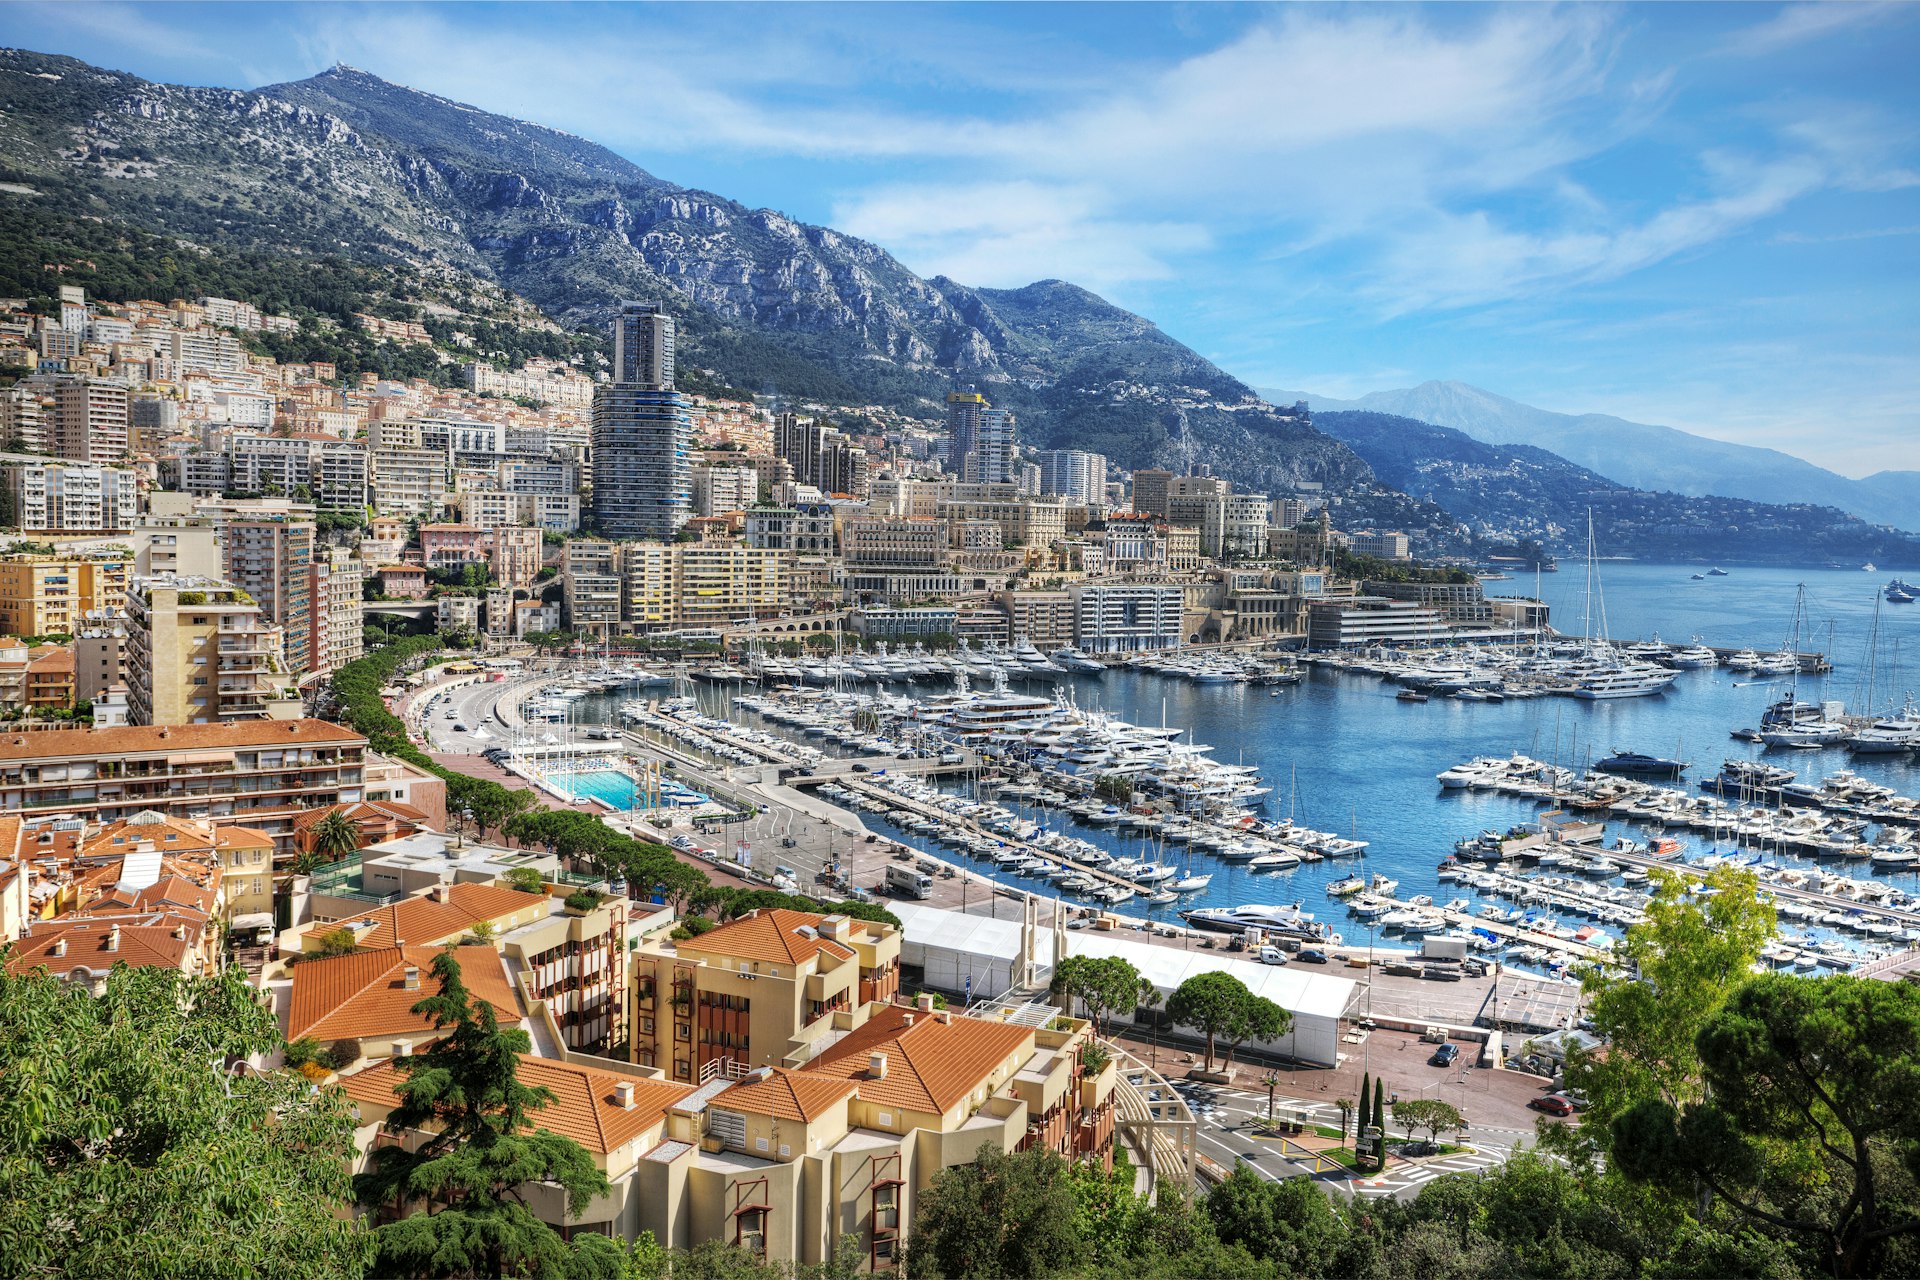 A scenic view of La Condamine and Monte Carlo